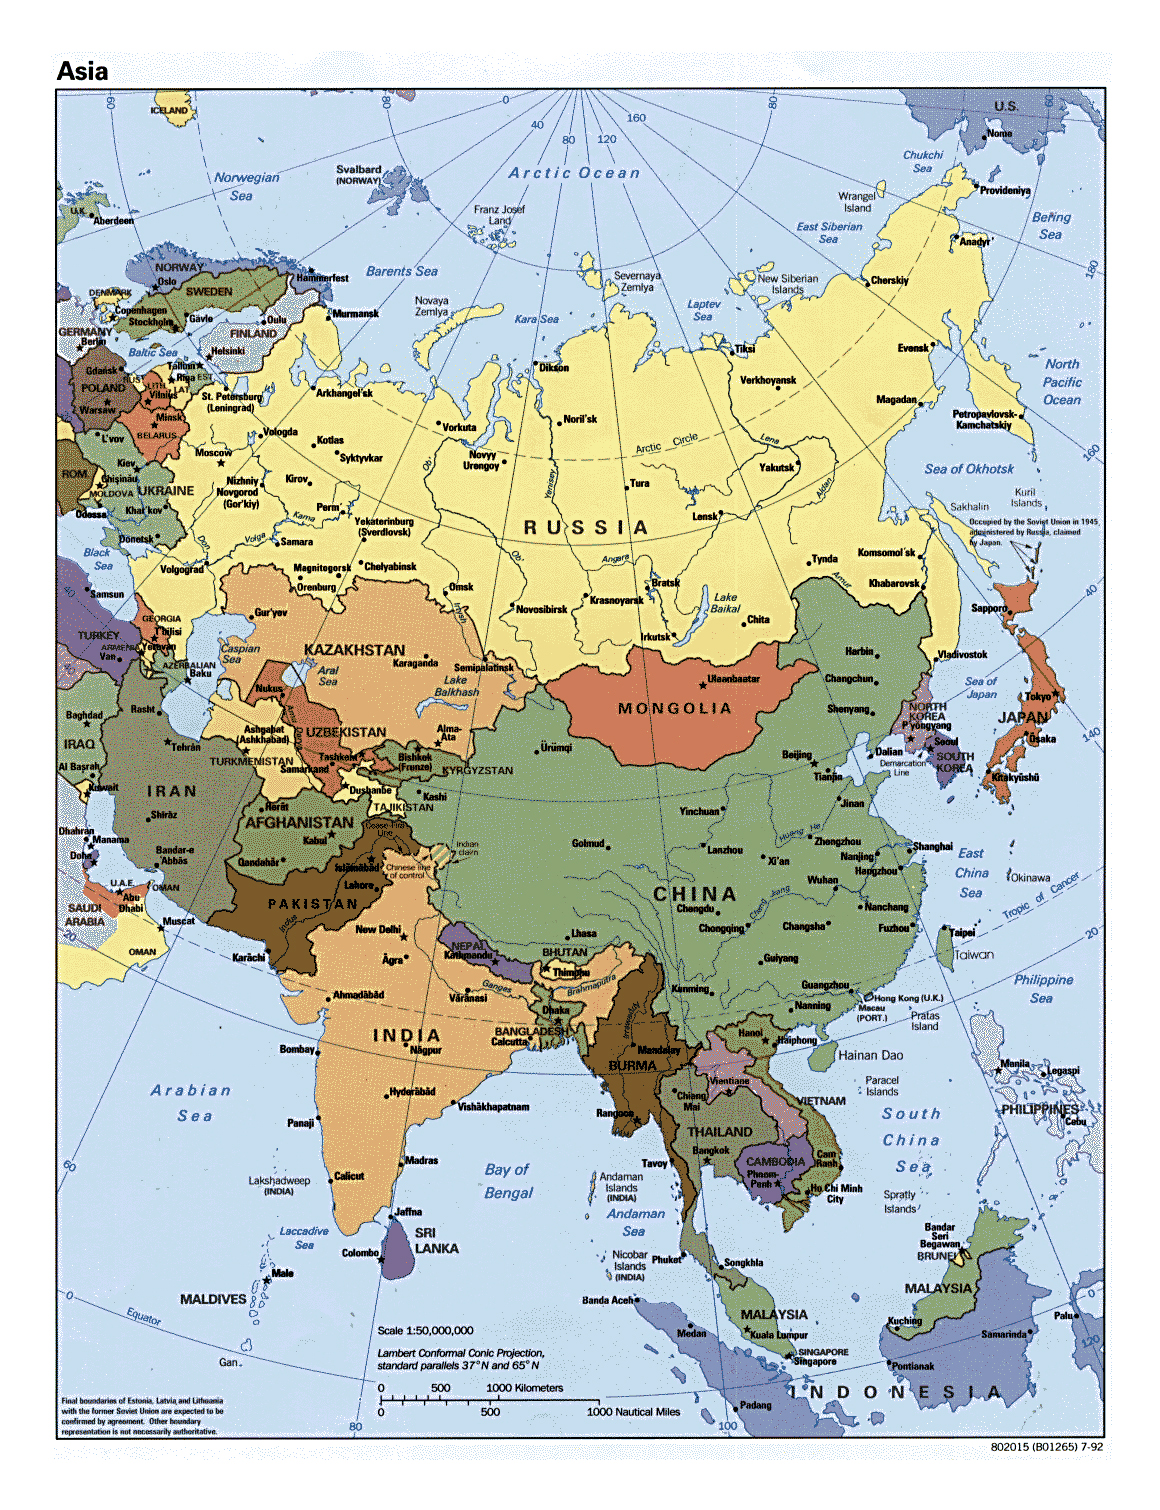 Descubrimiento Contenido Abrasivo Mapa Politico De Asia Paises Y Sexiz Pix 7817